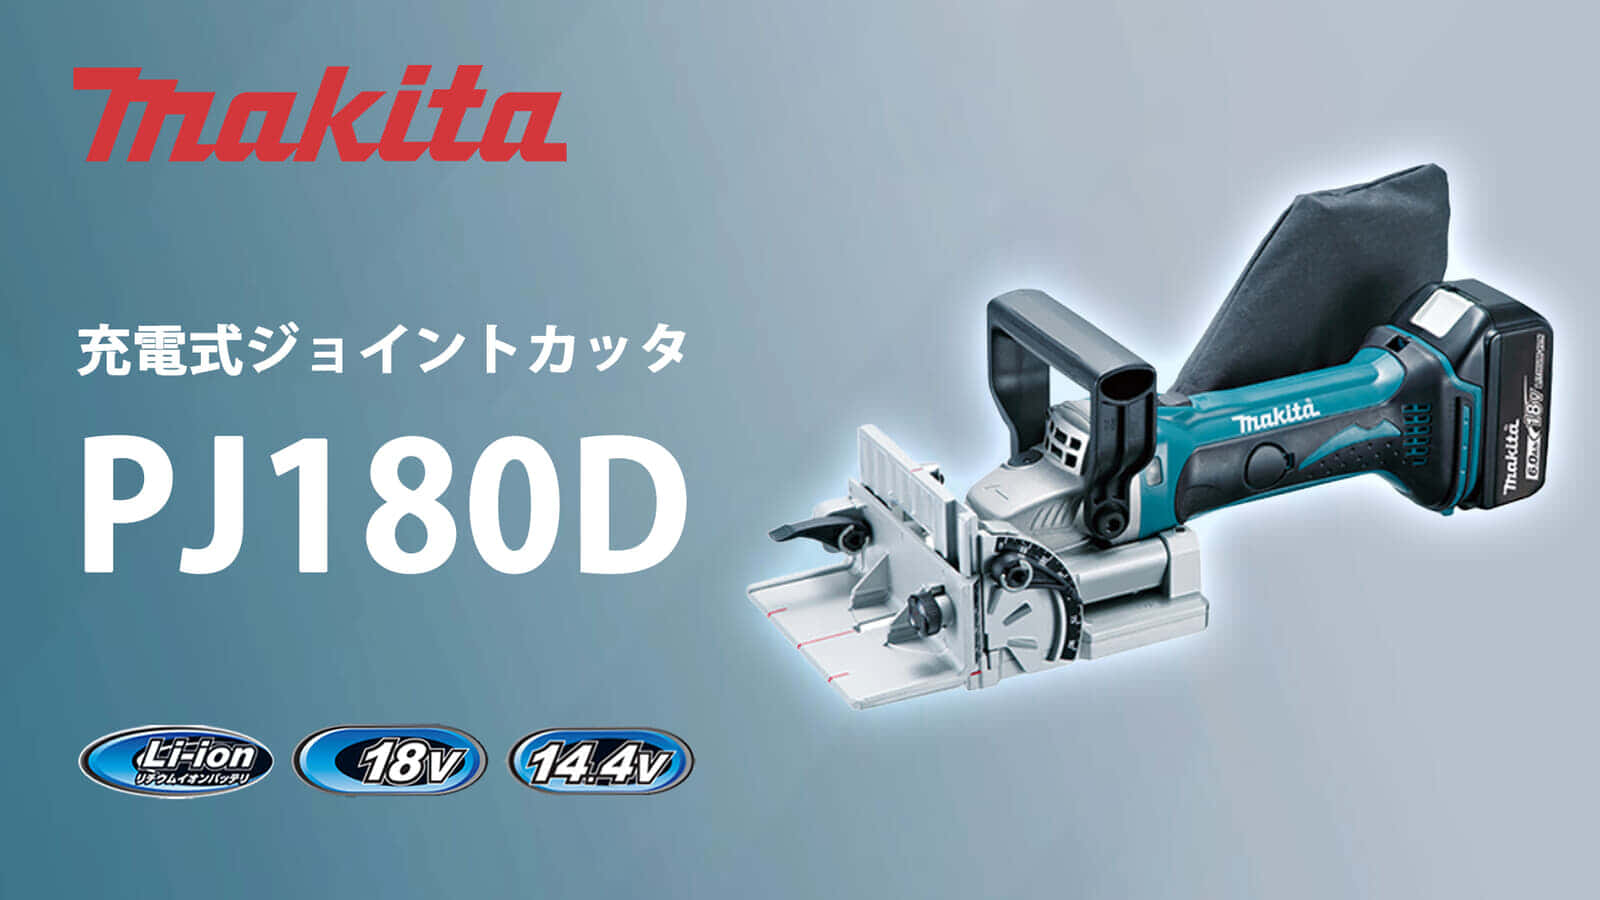 マキタ PJ180D 充電式ジョイントカッタを発売、ビスケット接合工具の